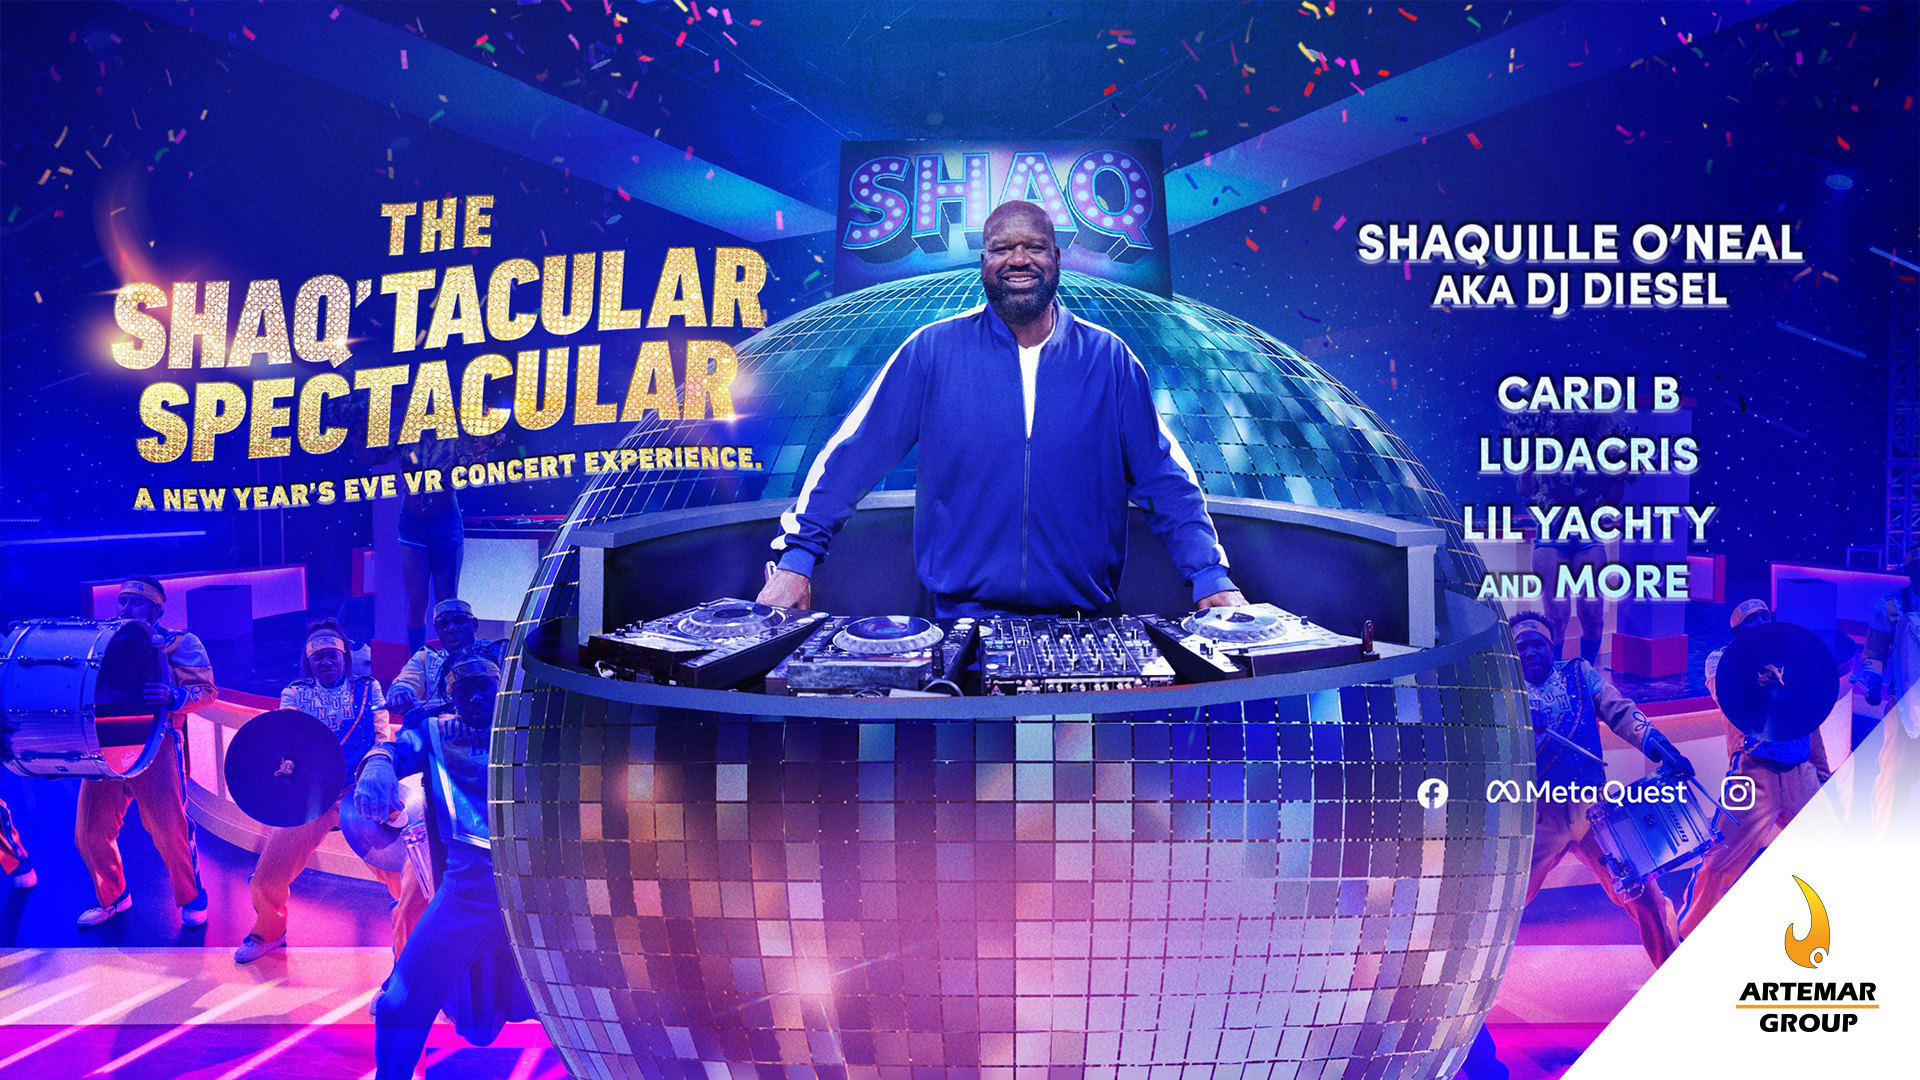 Shaquille O'Neal hará concierto VR por víspera de año nuevo